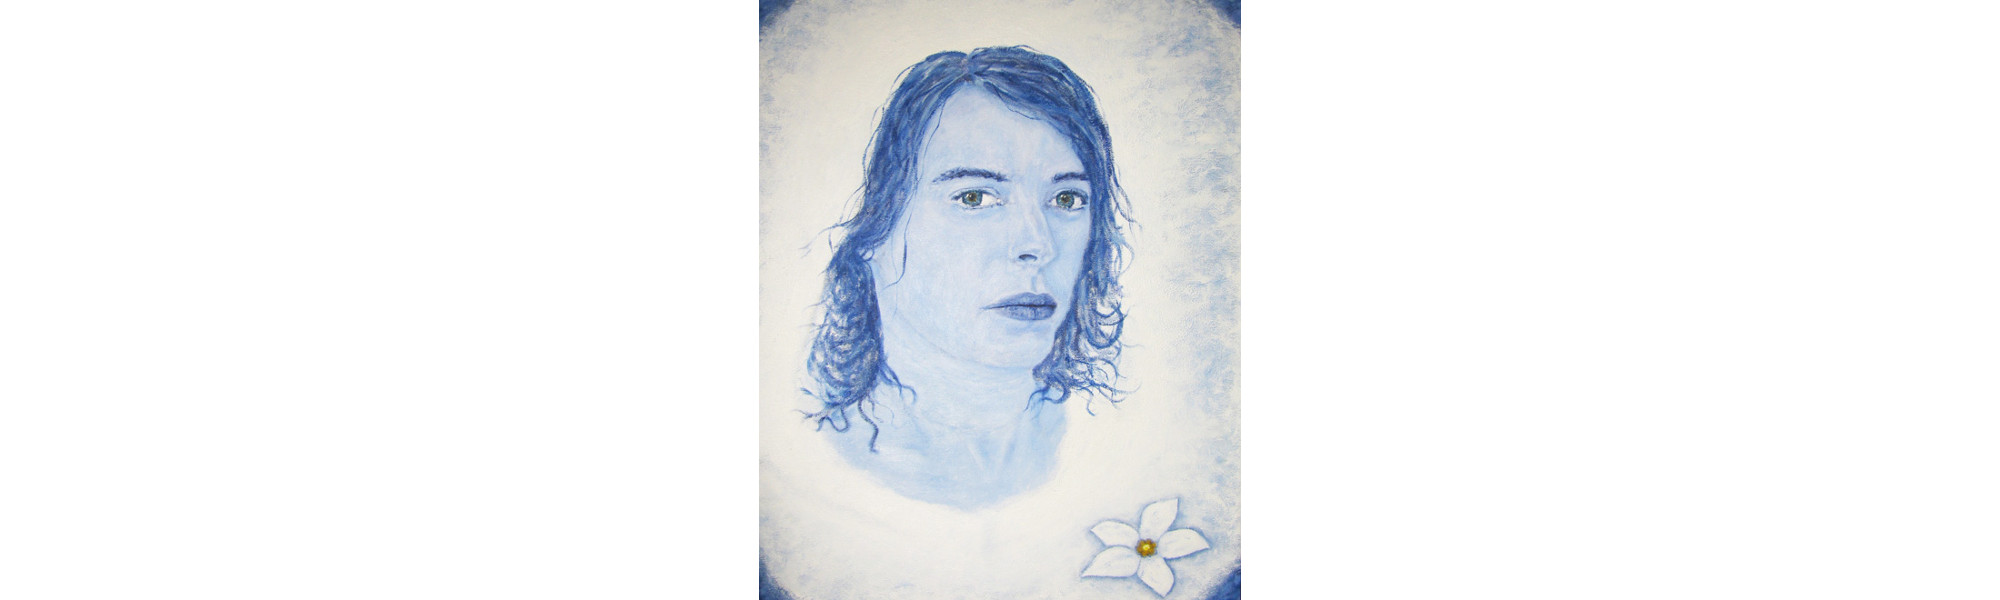 L'art tragique - Autoportrait en peinture Le Spectre alias Mélancolie - Sandra Caissy, l'artiste